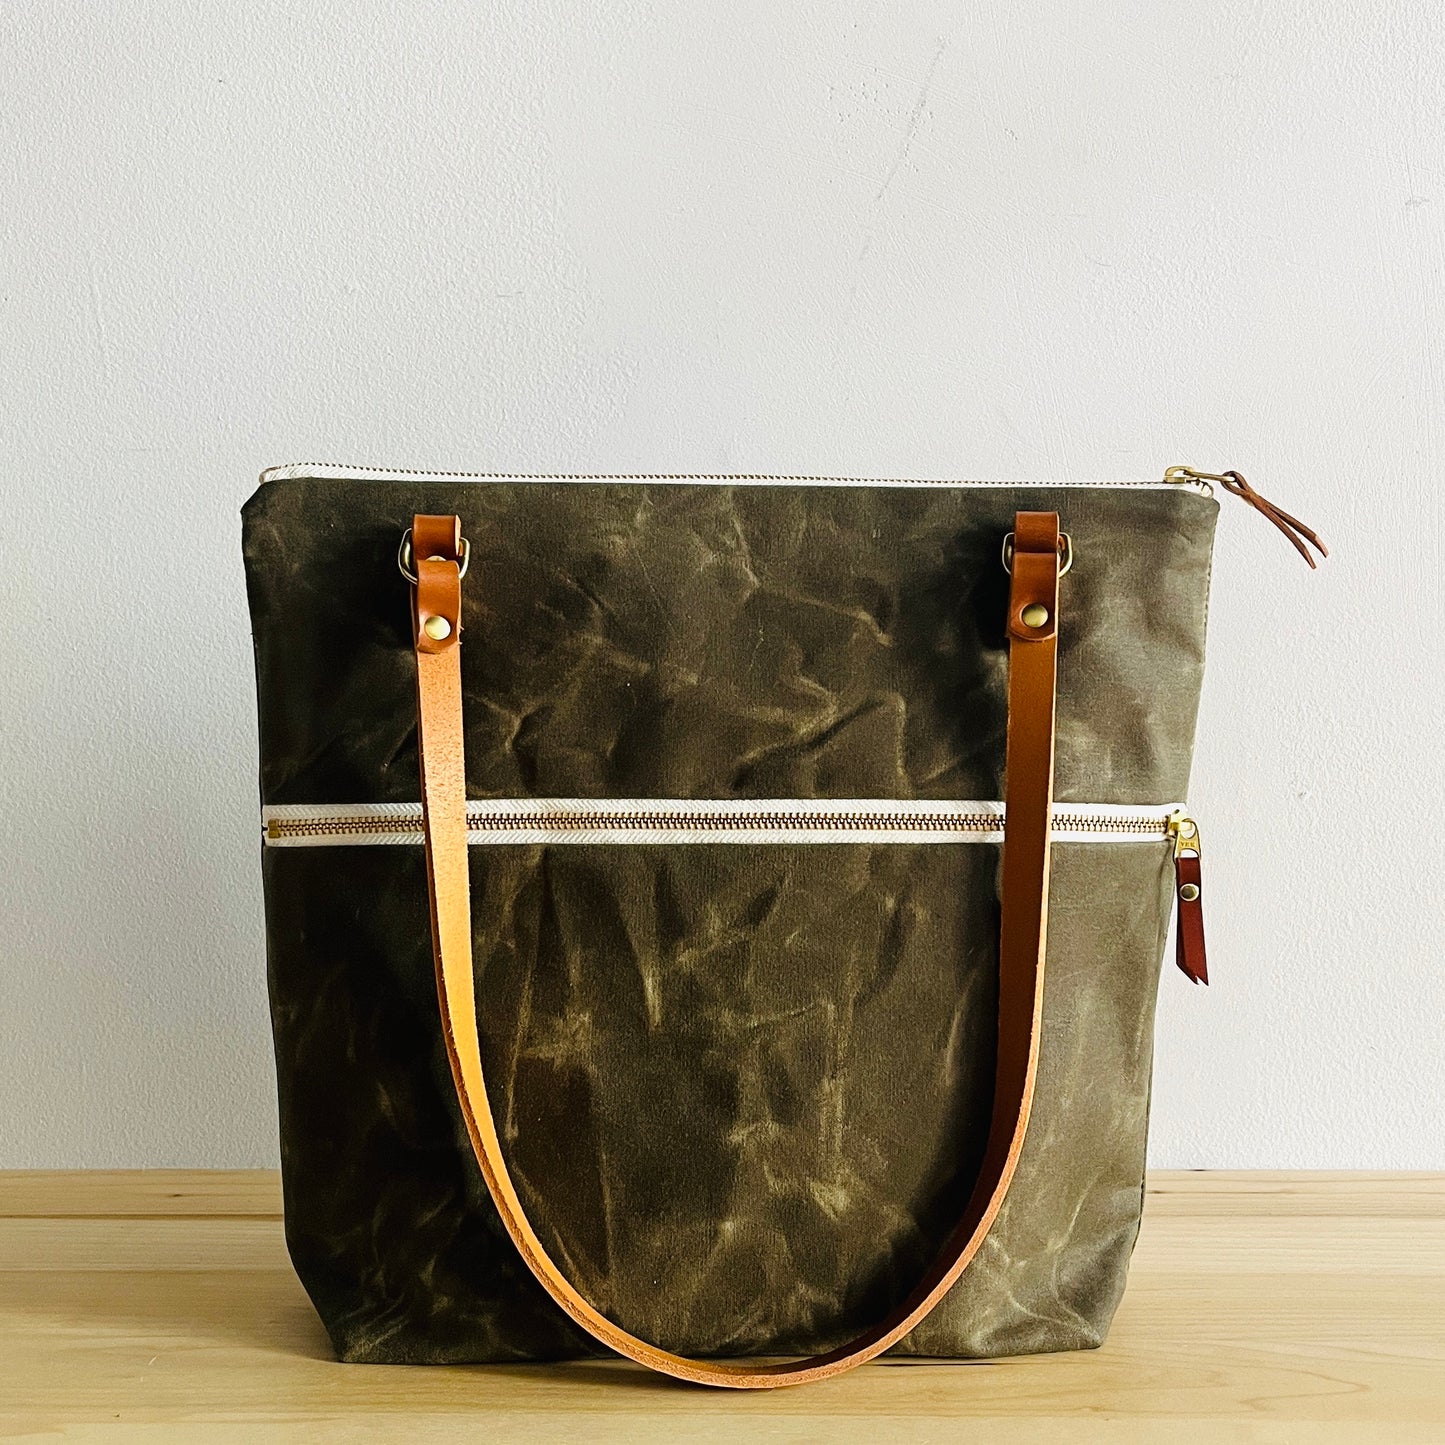 Olive-Waxed canvas shoulder bag